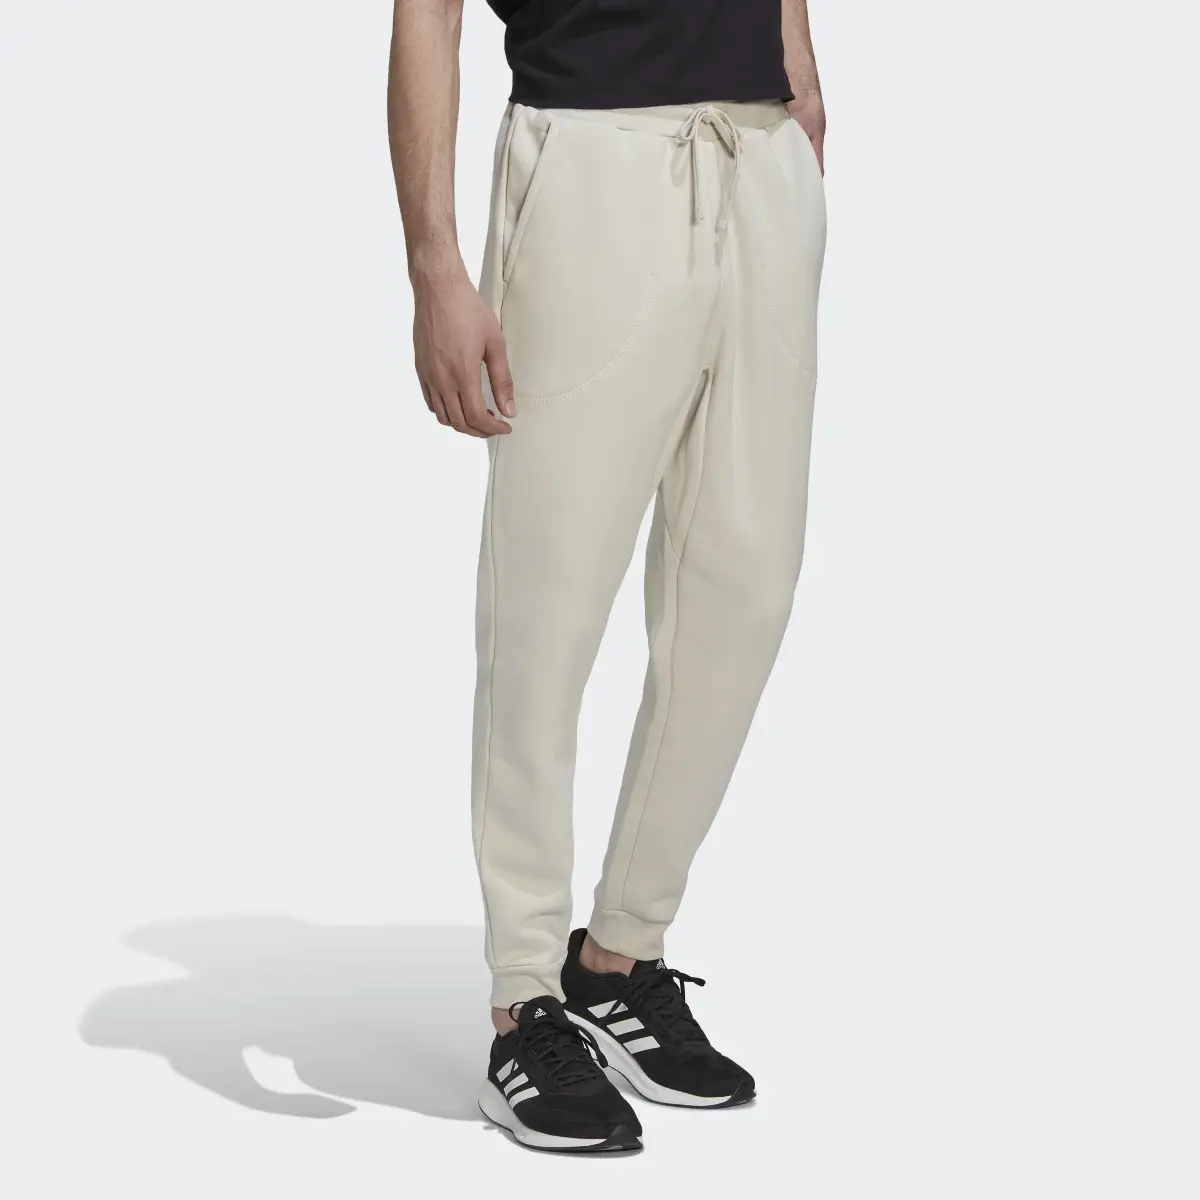 Adidas Studio Lounge Fleece Pants. 3